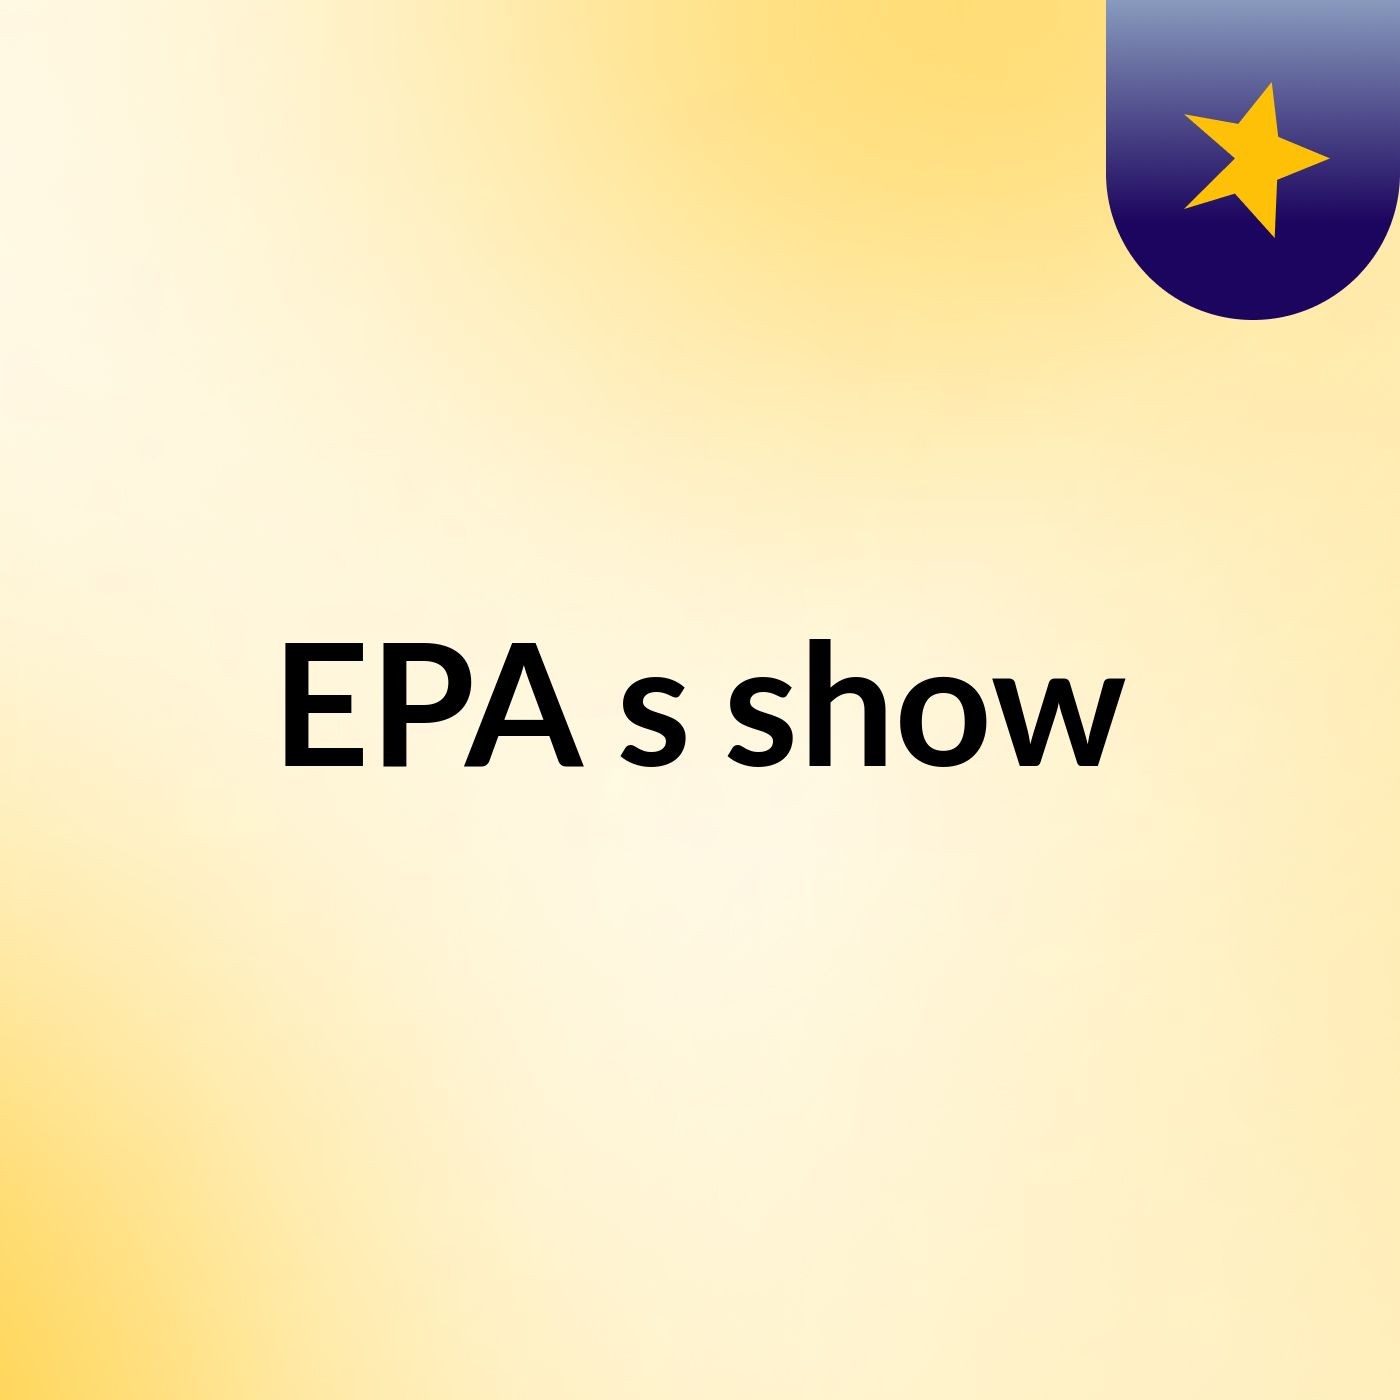 Índio eu não sou - EPA's show